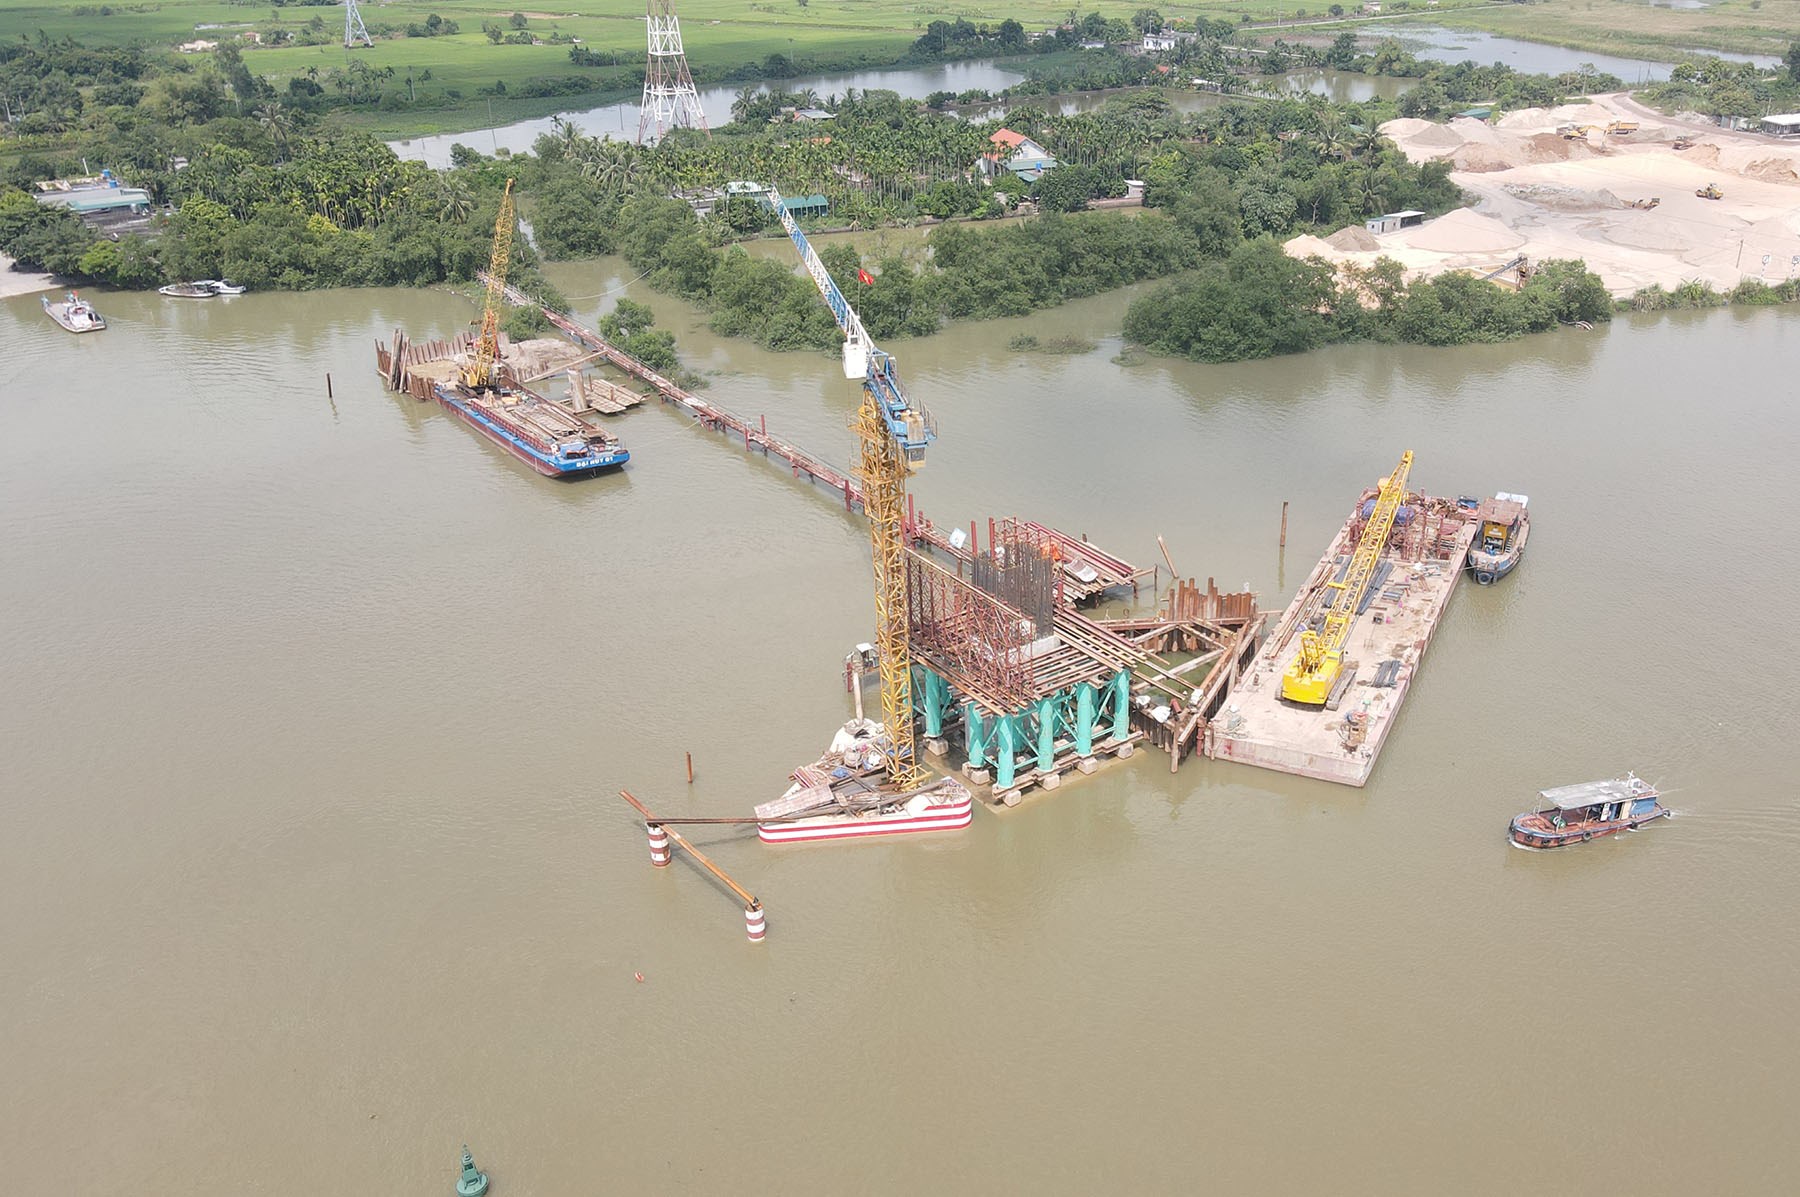 Hình ảnh cầu Lại Xuân nối Quảng Ninh - Hải Phòng sau hơn 8 tháng khởi công